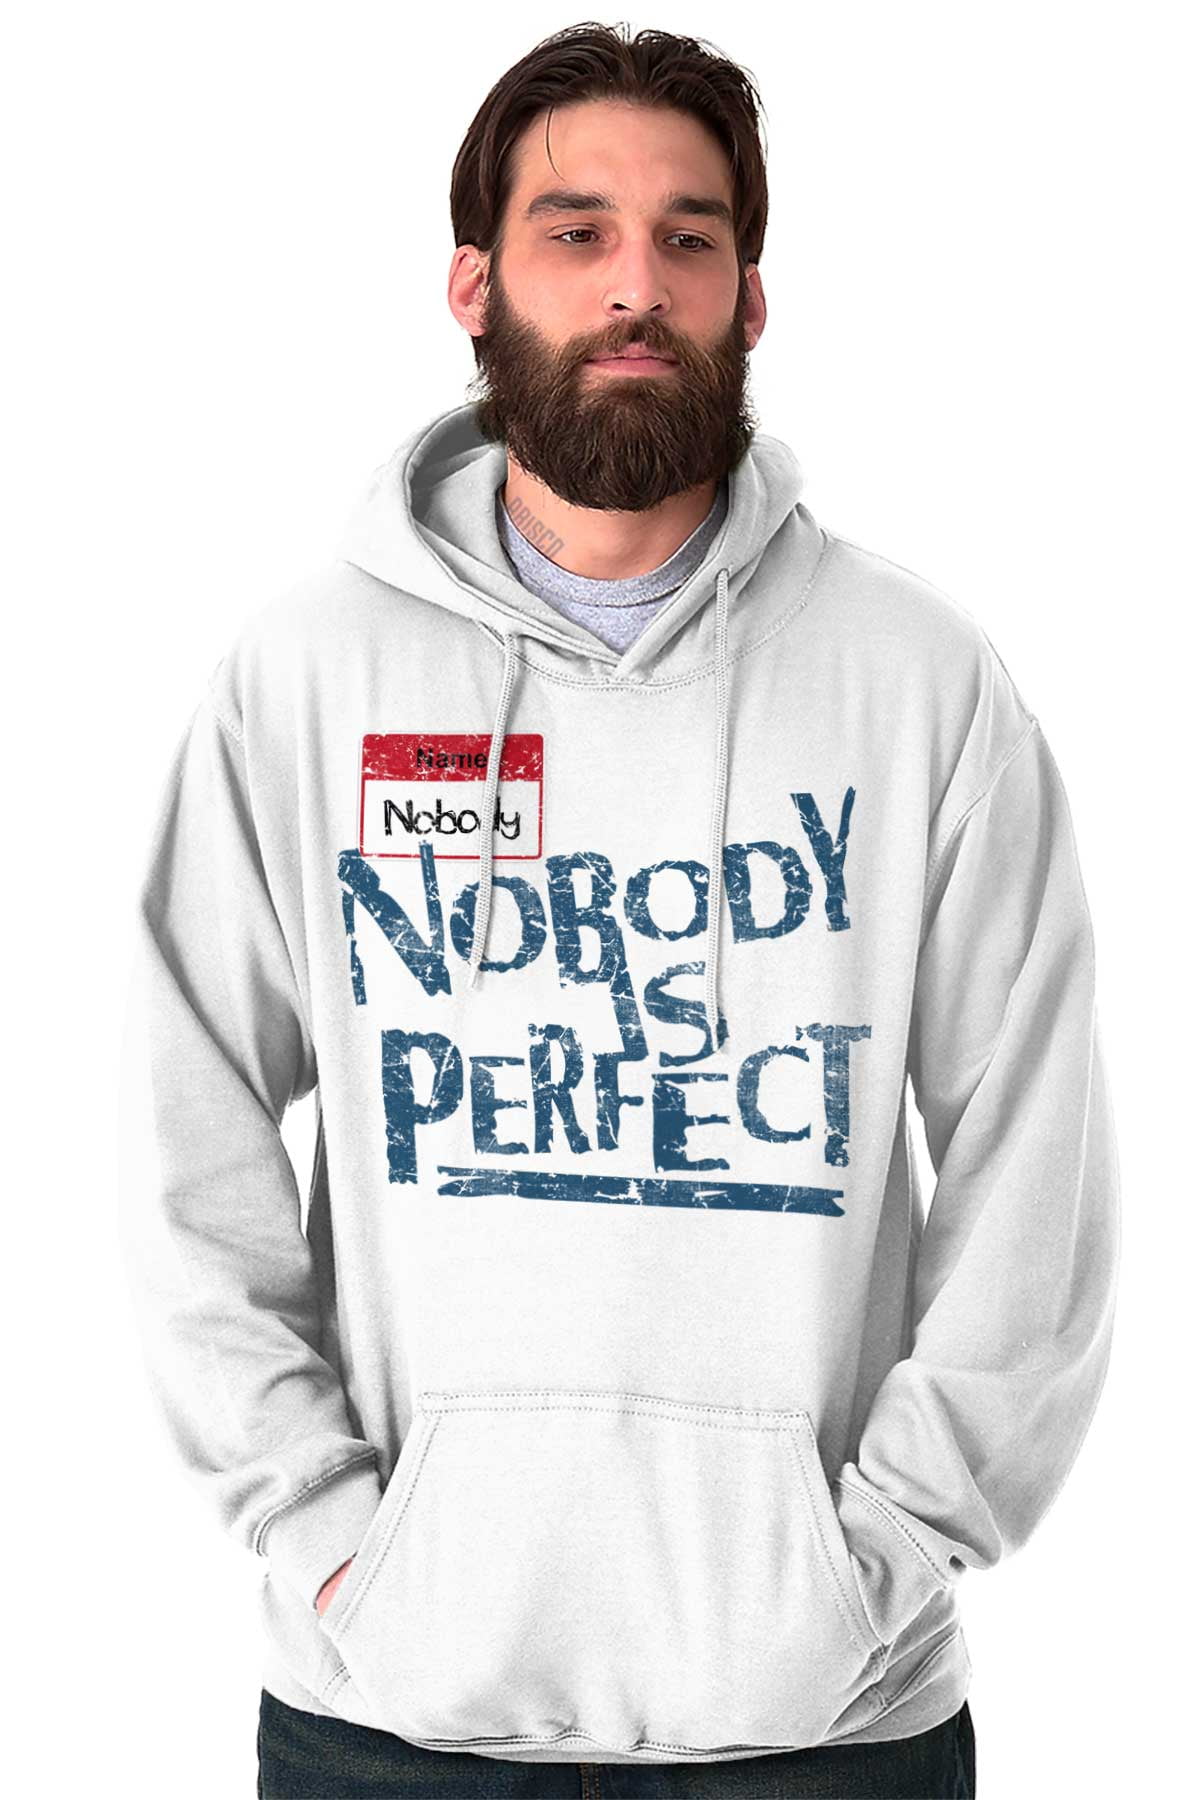 Brisco Brands - Inspirational Hooded Sweatshirts Hoodies For Men ...